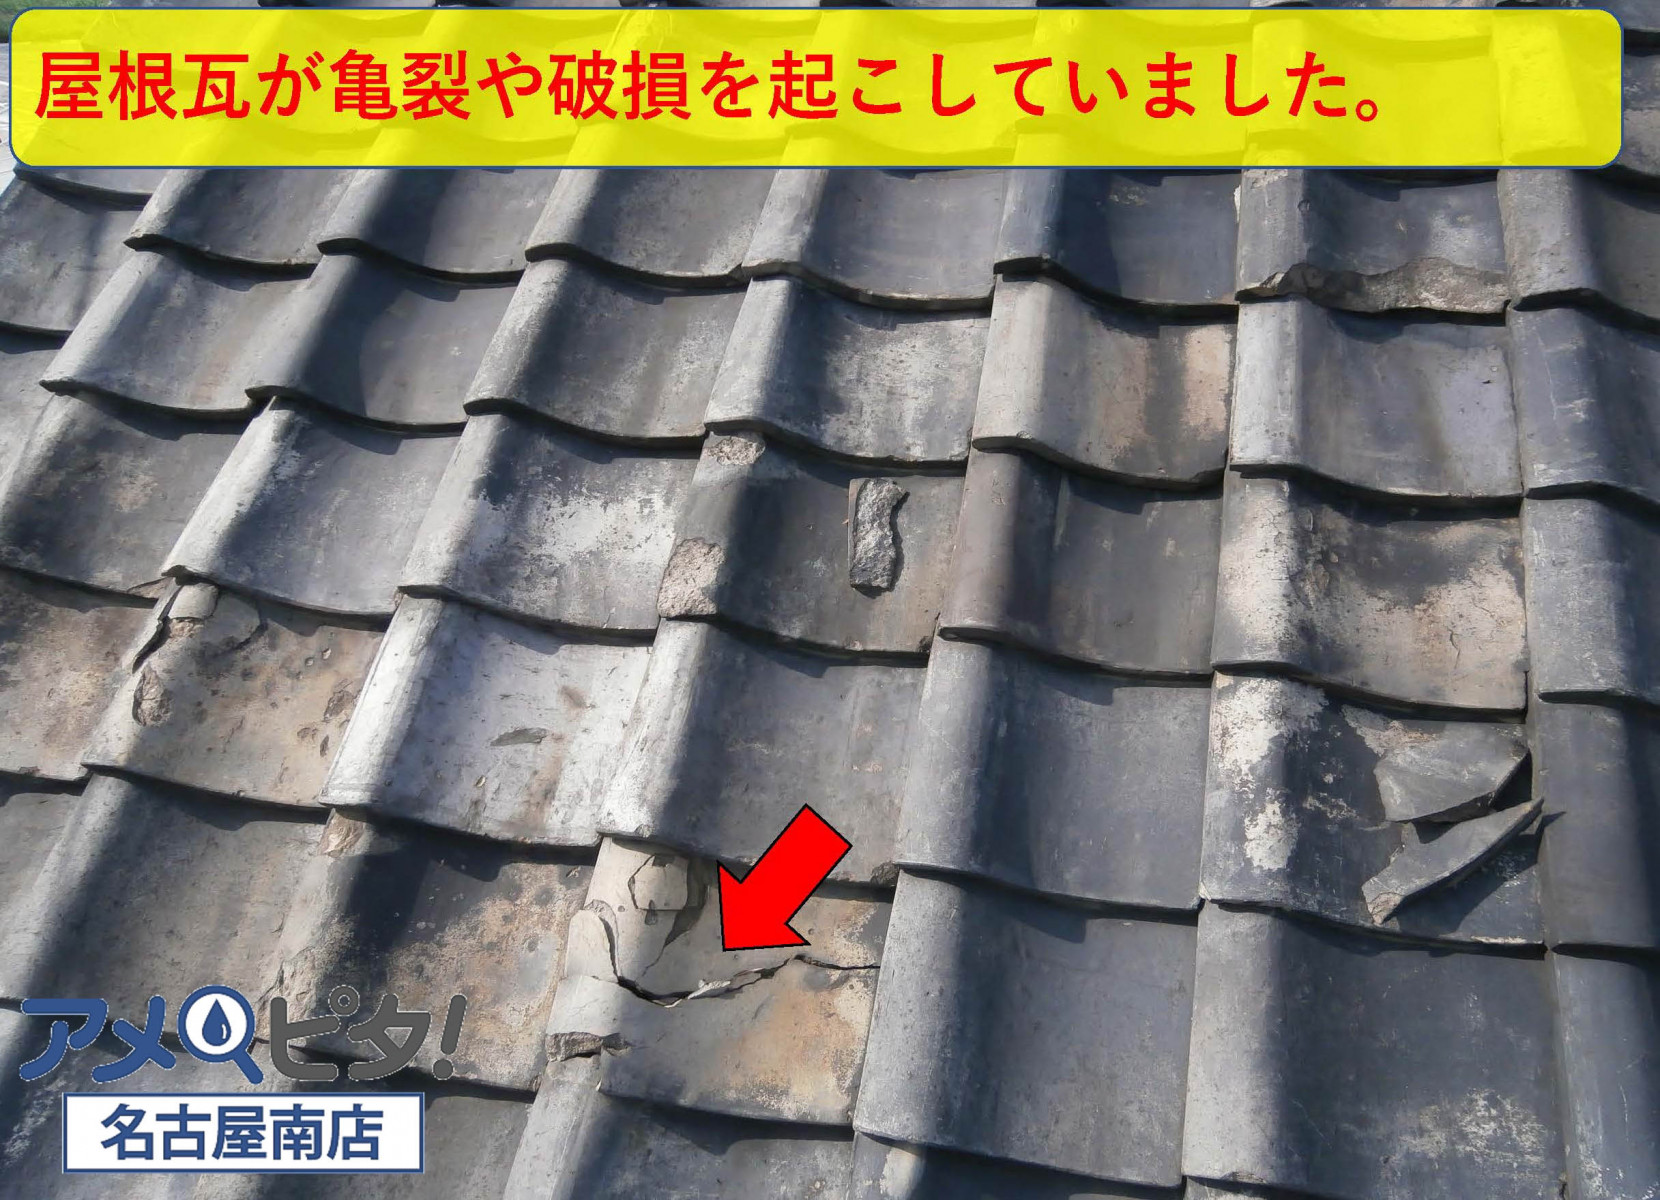 屋根瓦が亀裂や破損を起こしています